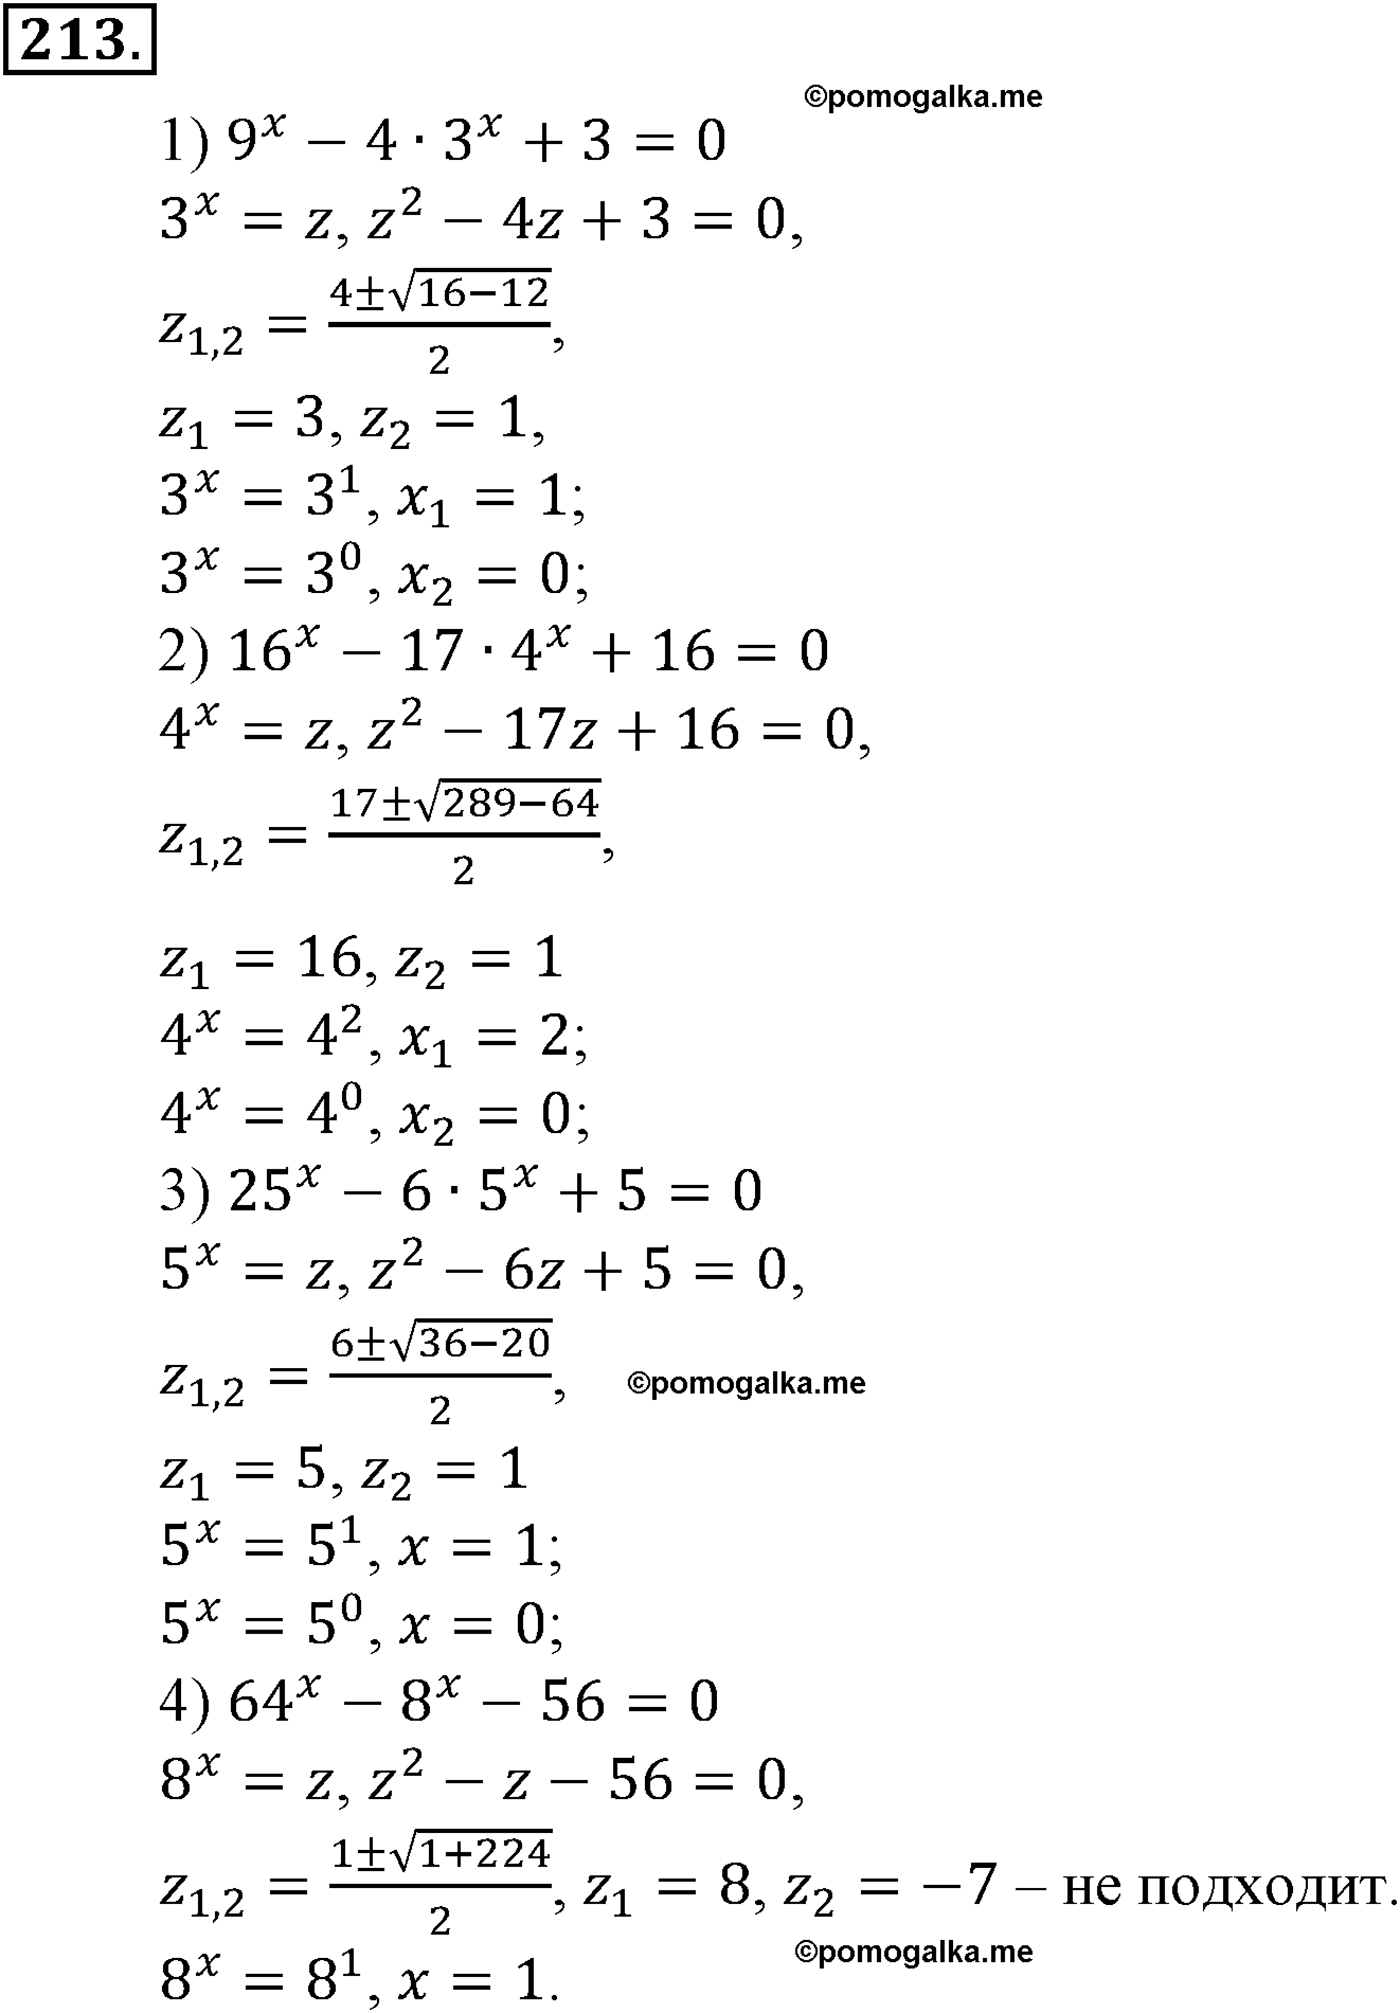 разбор задачи №213 по алгебре за 10-11 класс из учебника Алимова, Колягина